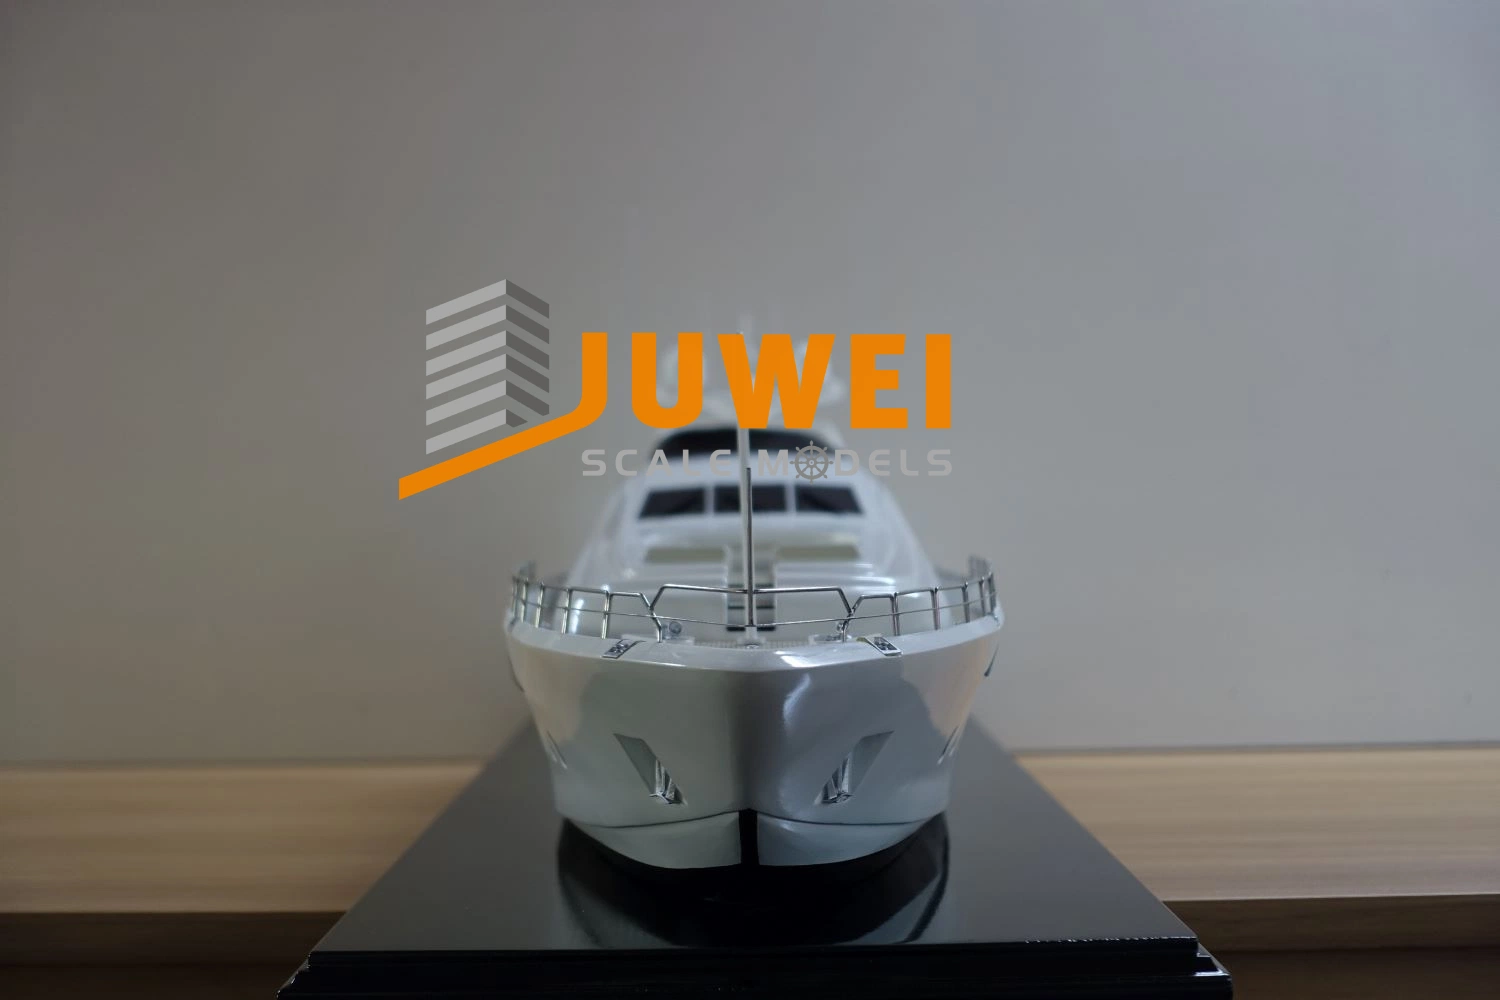 Kundenspezifischer Luxus Yacht Maßstab Modellbauer mit Equisite Basis (JW-05)